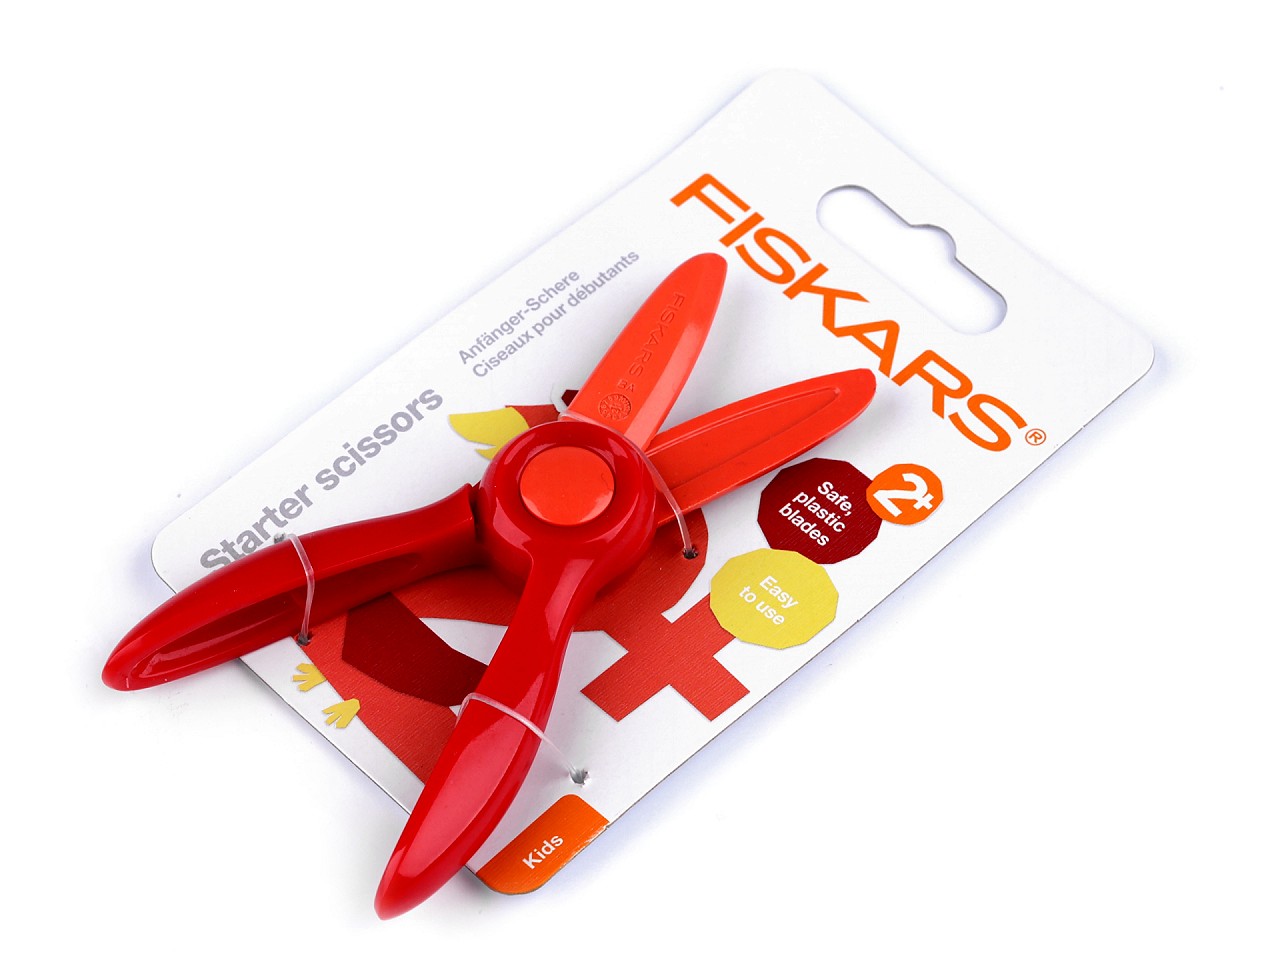 Textillux.sk - produkt Detské nožnice Fiskars dĺžka 13 cm